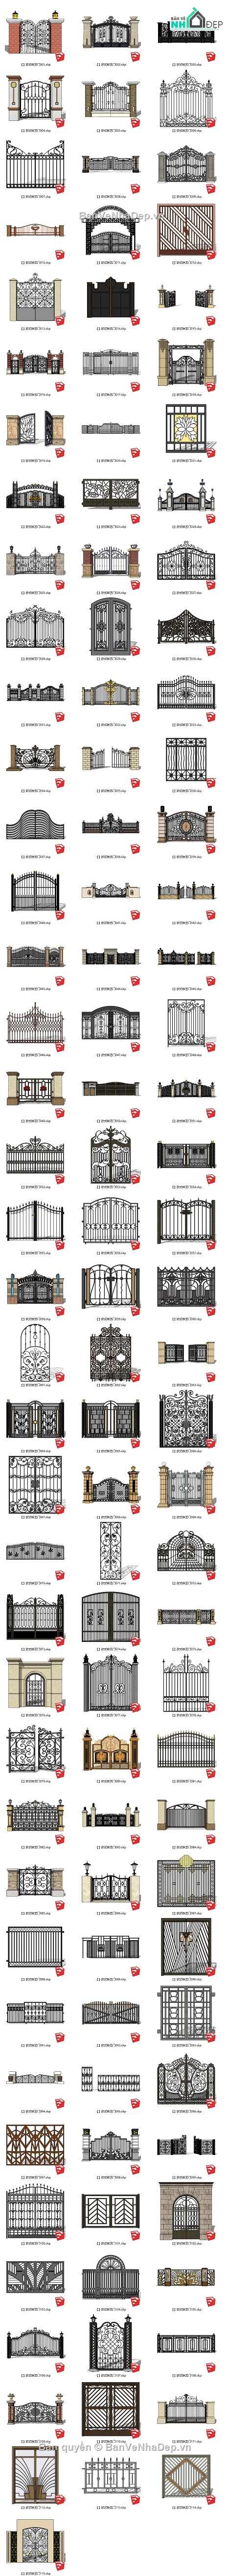 su cổng,cổng sketchup,mẫu cổng sketchup,File sketchup các mẫu cổng,mẫu cổng